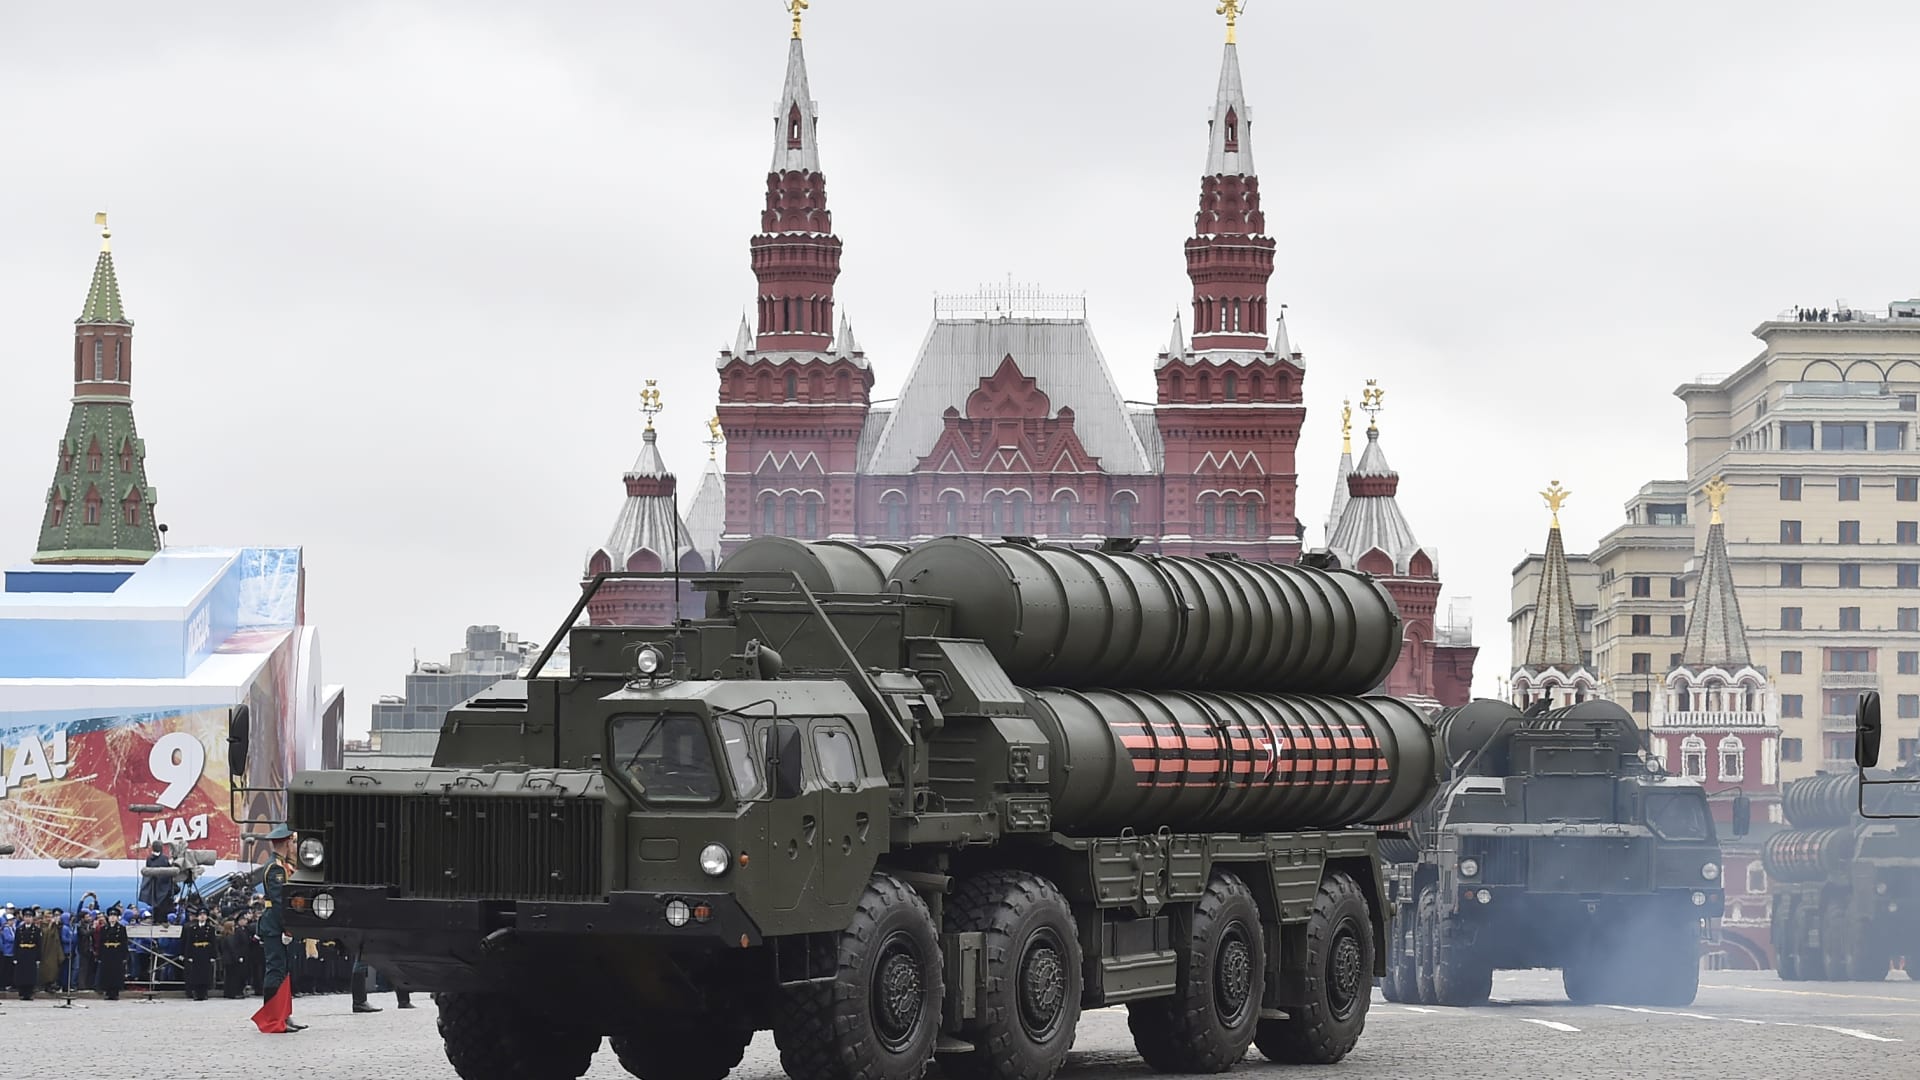 السعودية تشتريها من روسيا.. ماذا تعرف عن منظومة صواريخ S-400؟